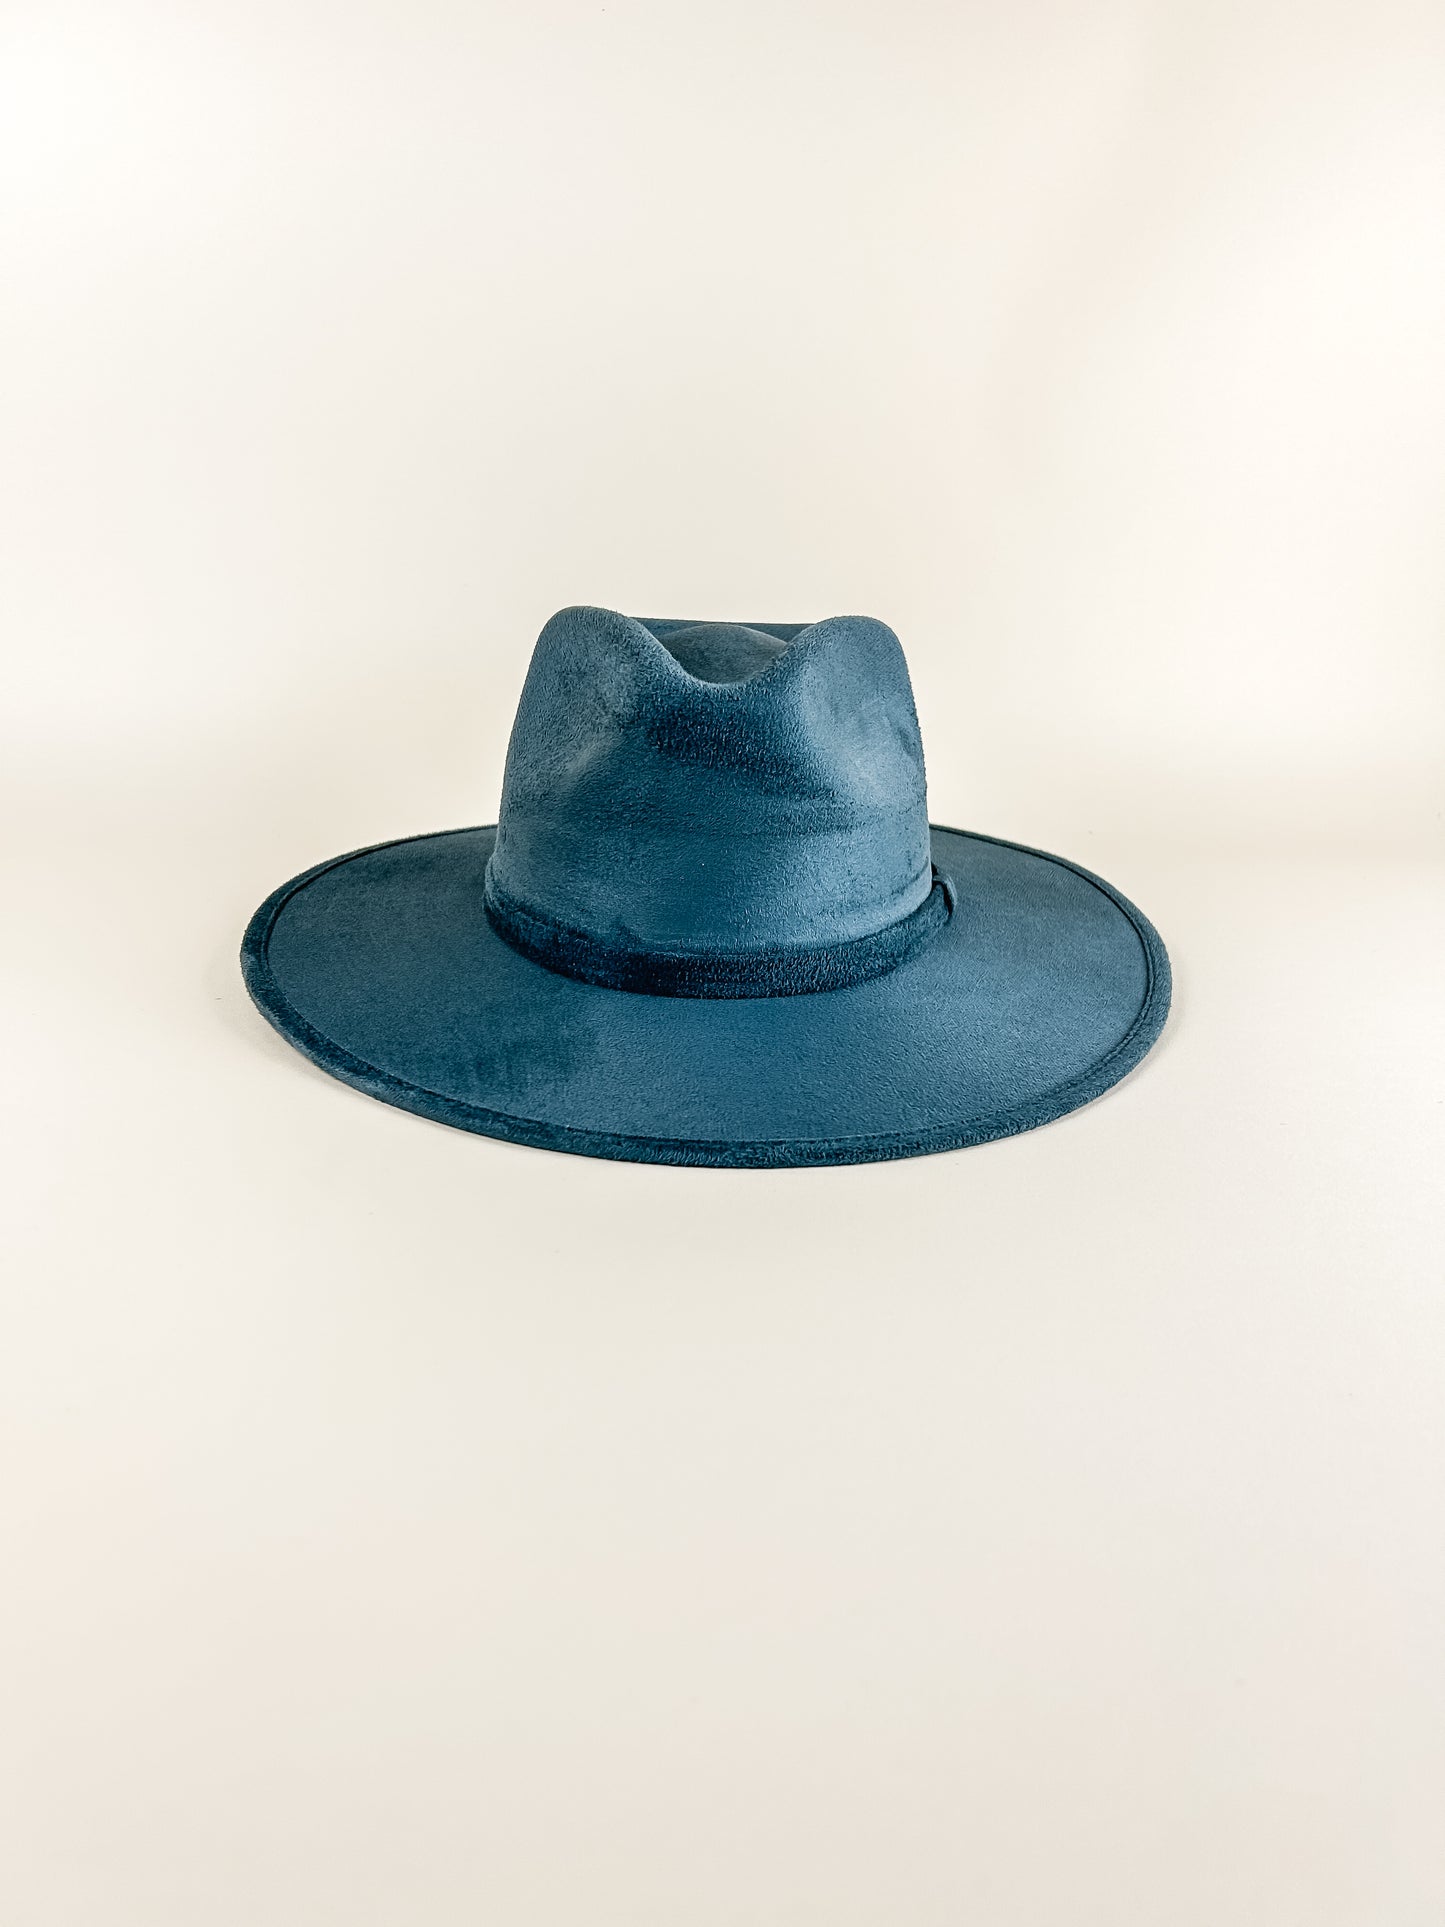 Vegan Suede Rancher Hat - Peacock Blue